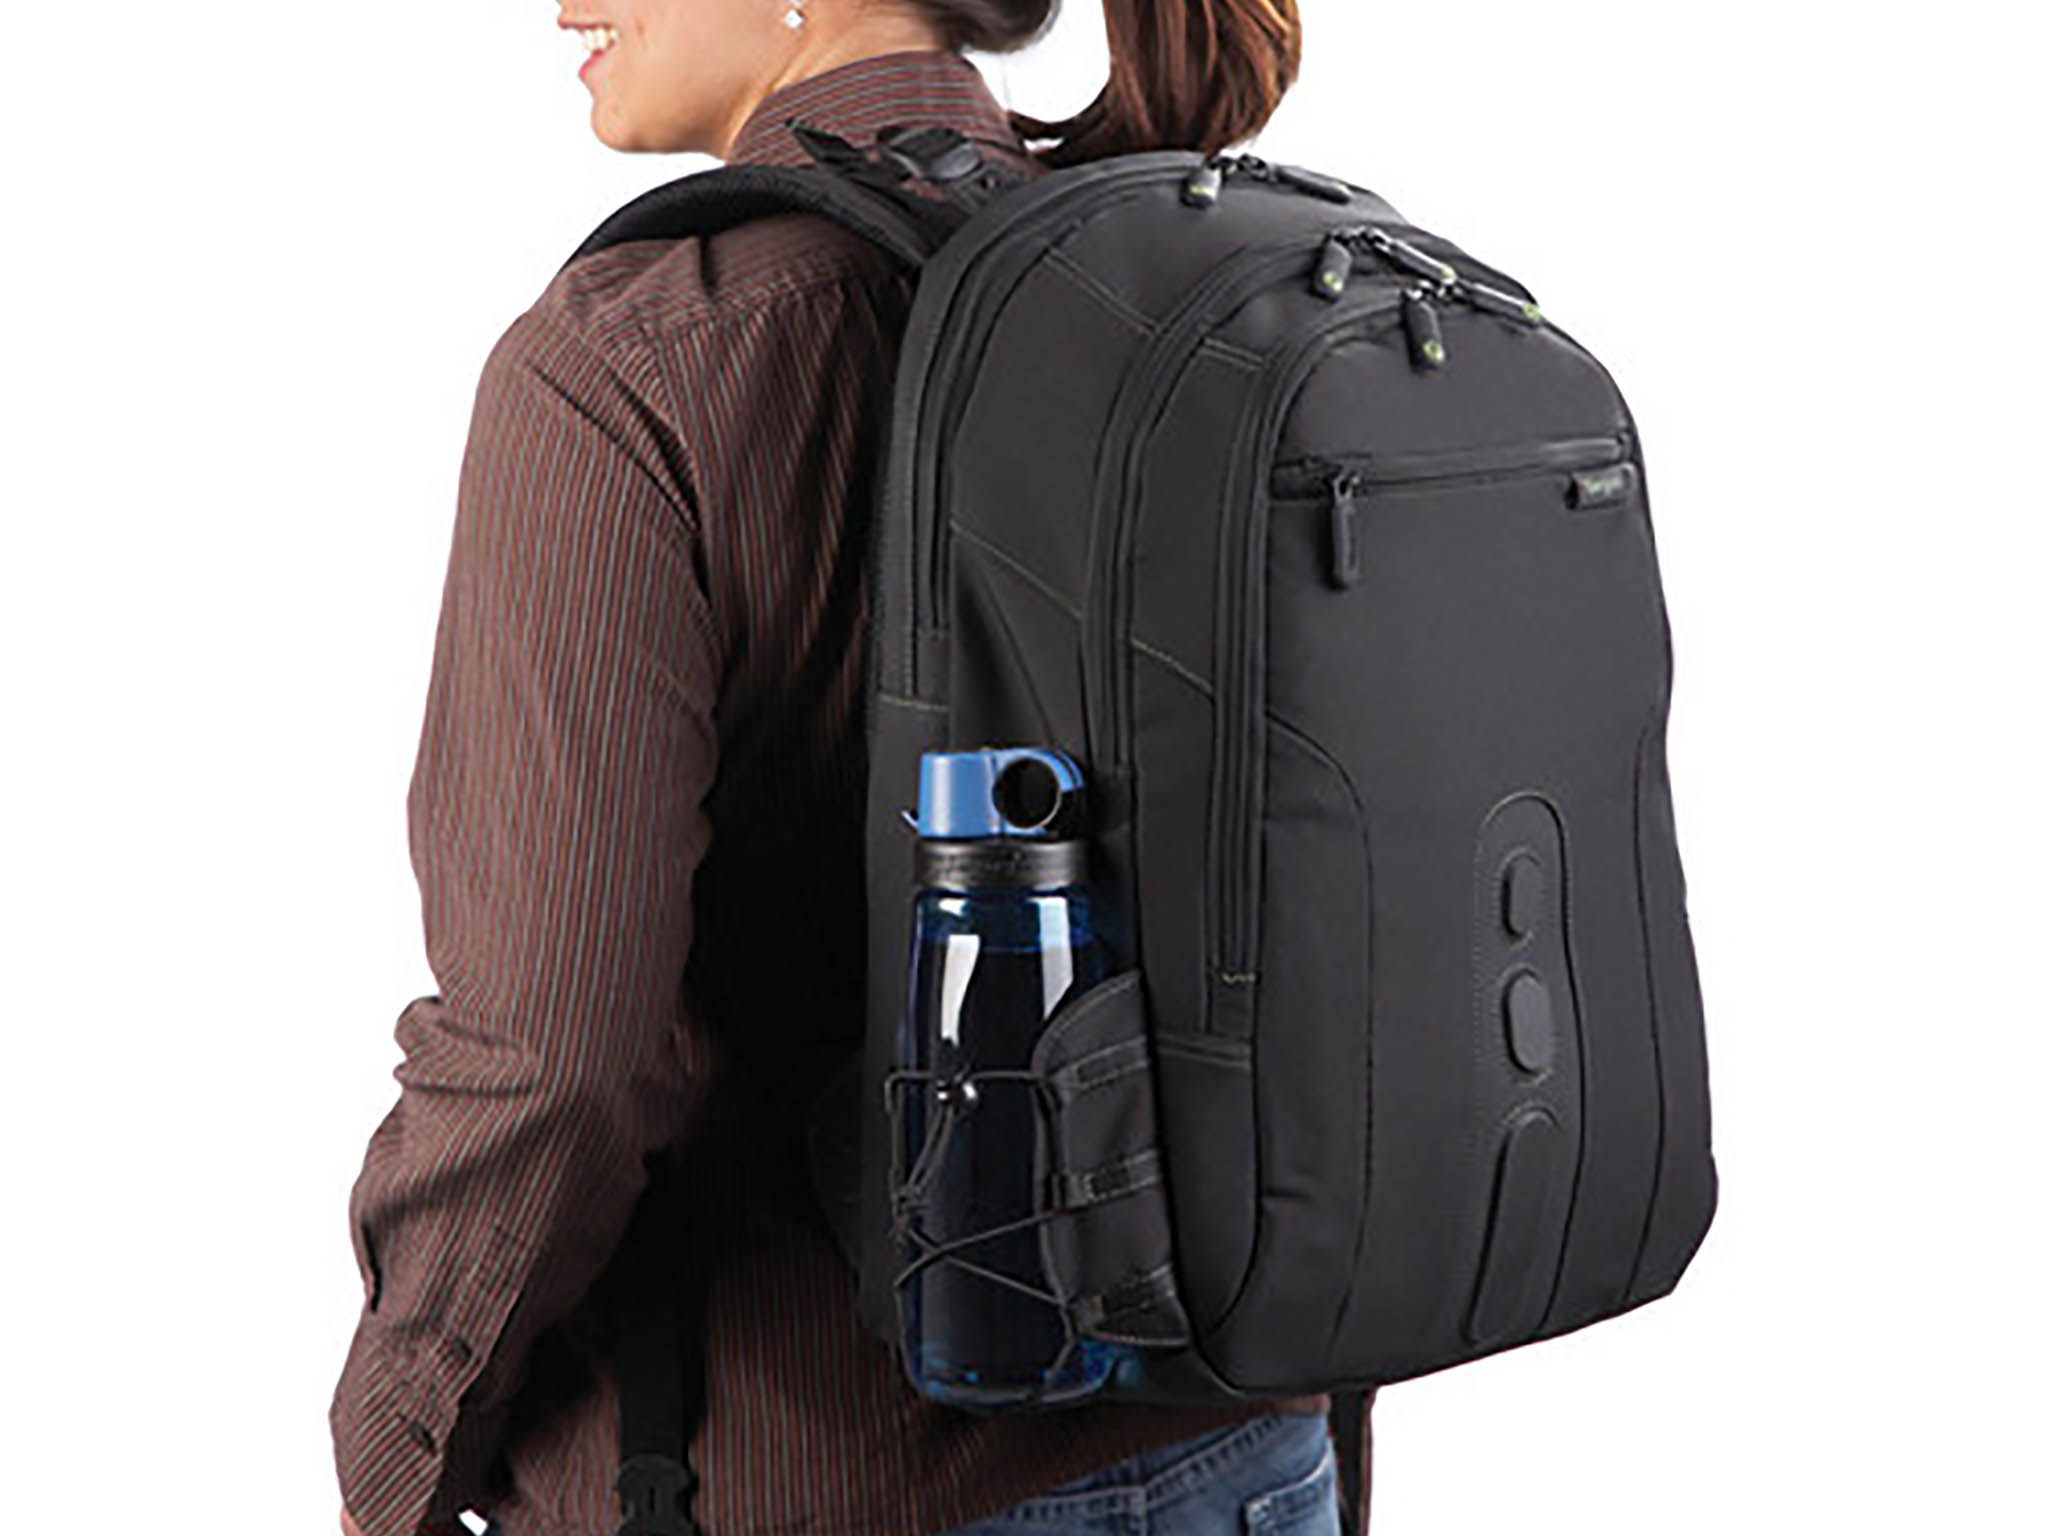 Targus Spruce Ecosmart Travel Backpack Lifestyle